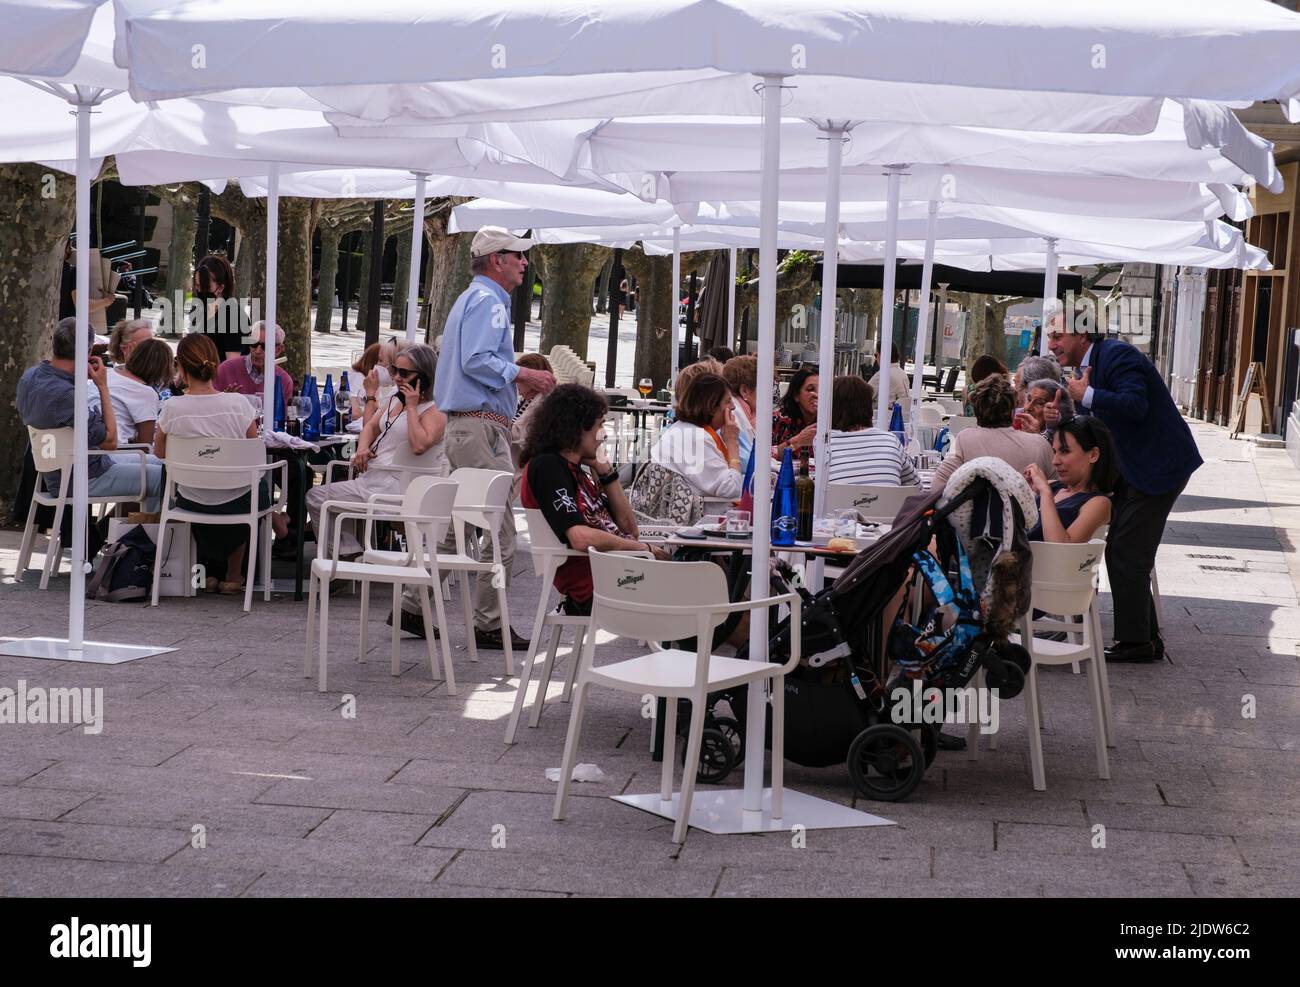 Spain, Burgos. Street Scene with Sidewalk Cafe. Stock Photo